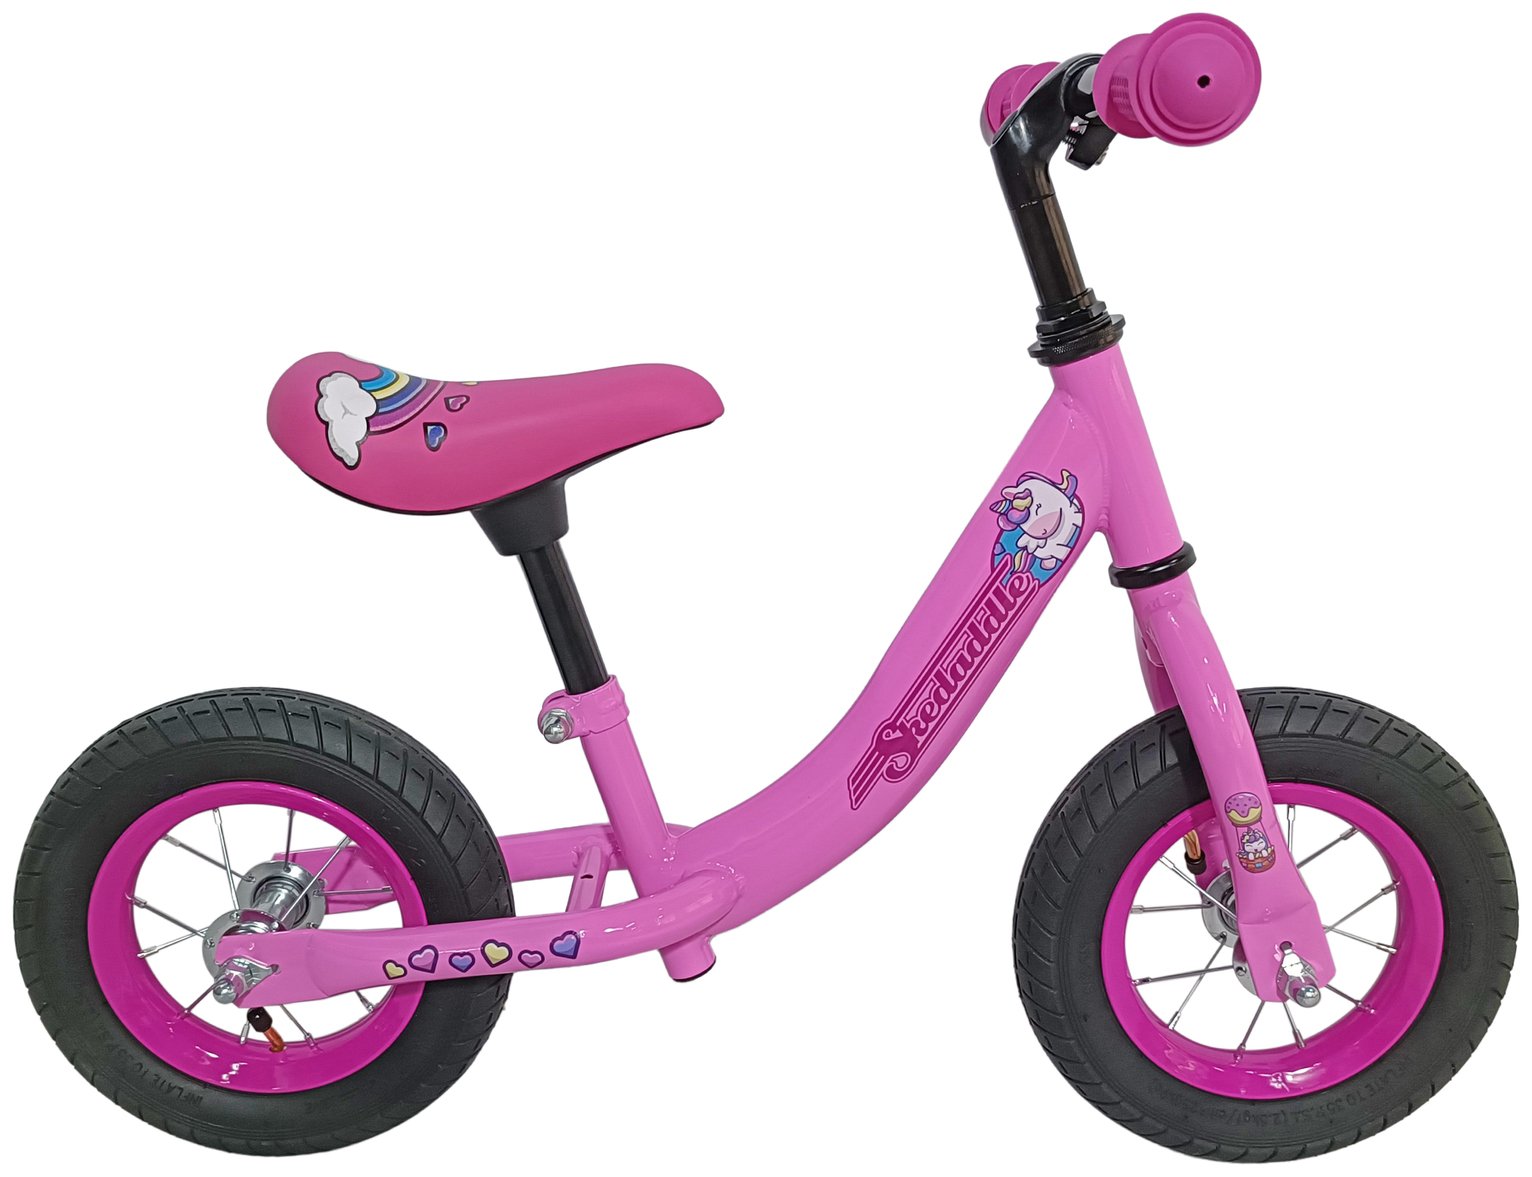 Skedaddle Unicorn 10inch Wheel Size Unisex Balance Bike Pink